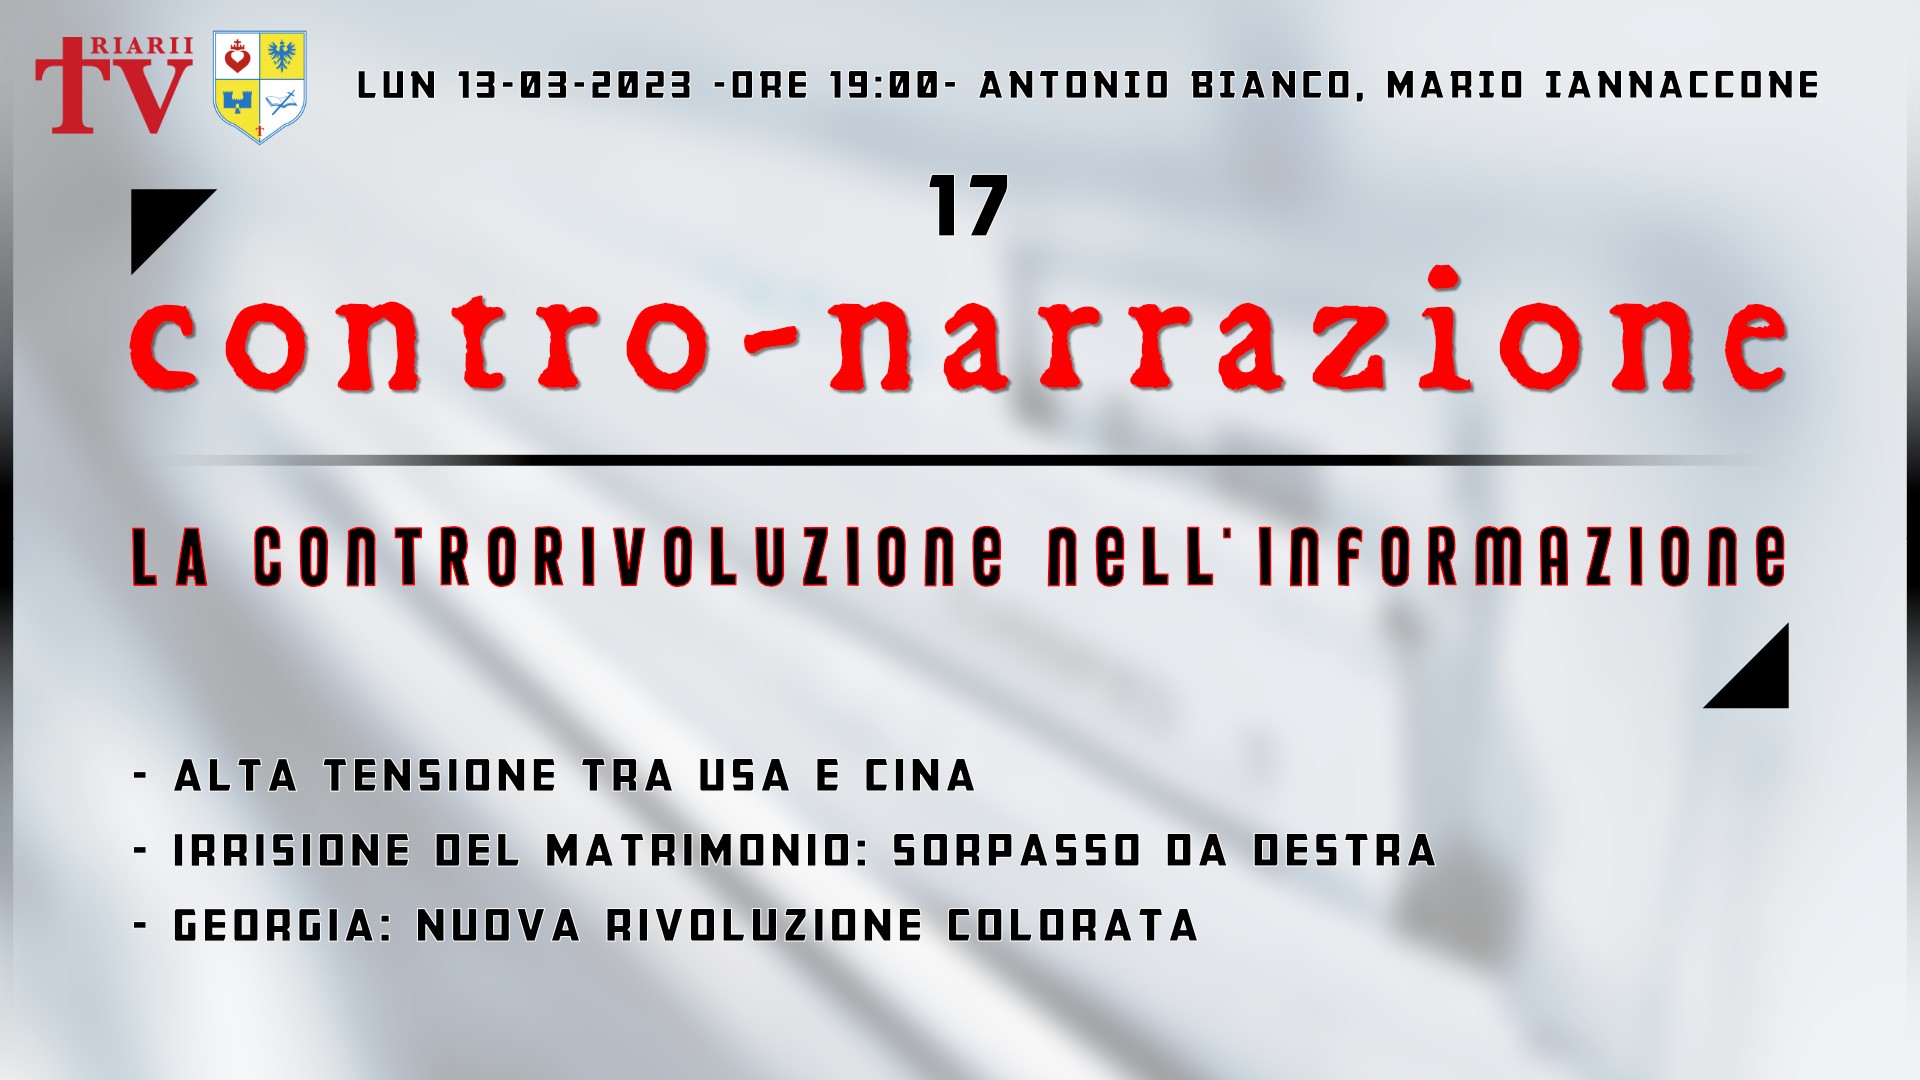 CONTRO-NARRAZIONE NR.17 - LUN 13 MARZO 2023 - Antonio Bianco, Mario Iannaccone